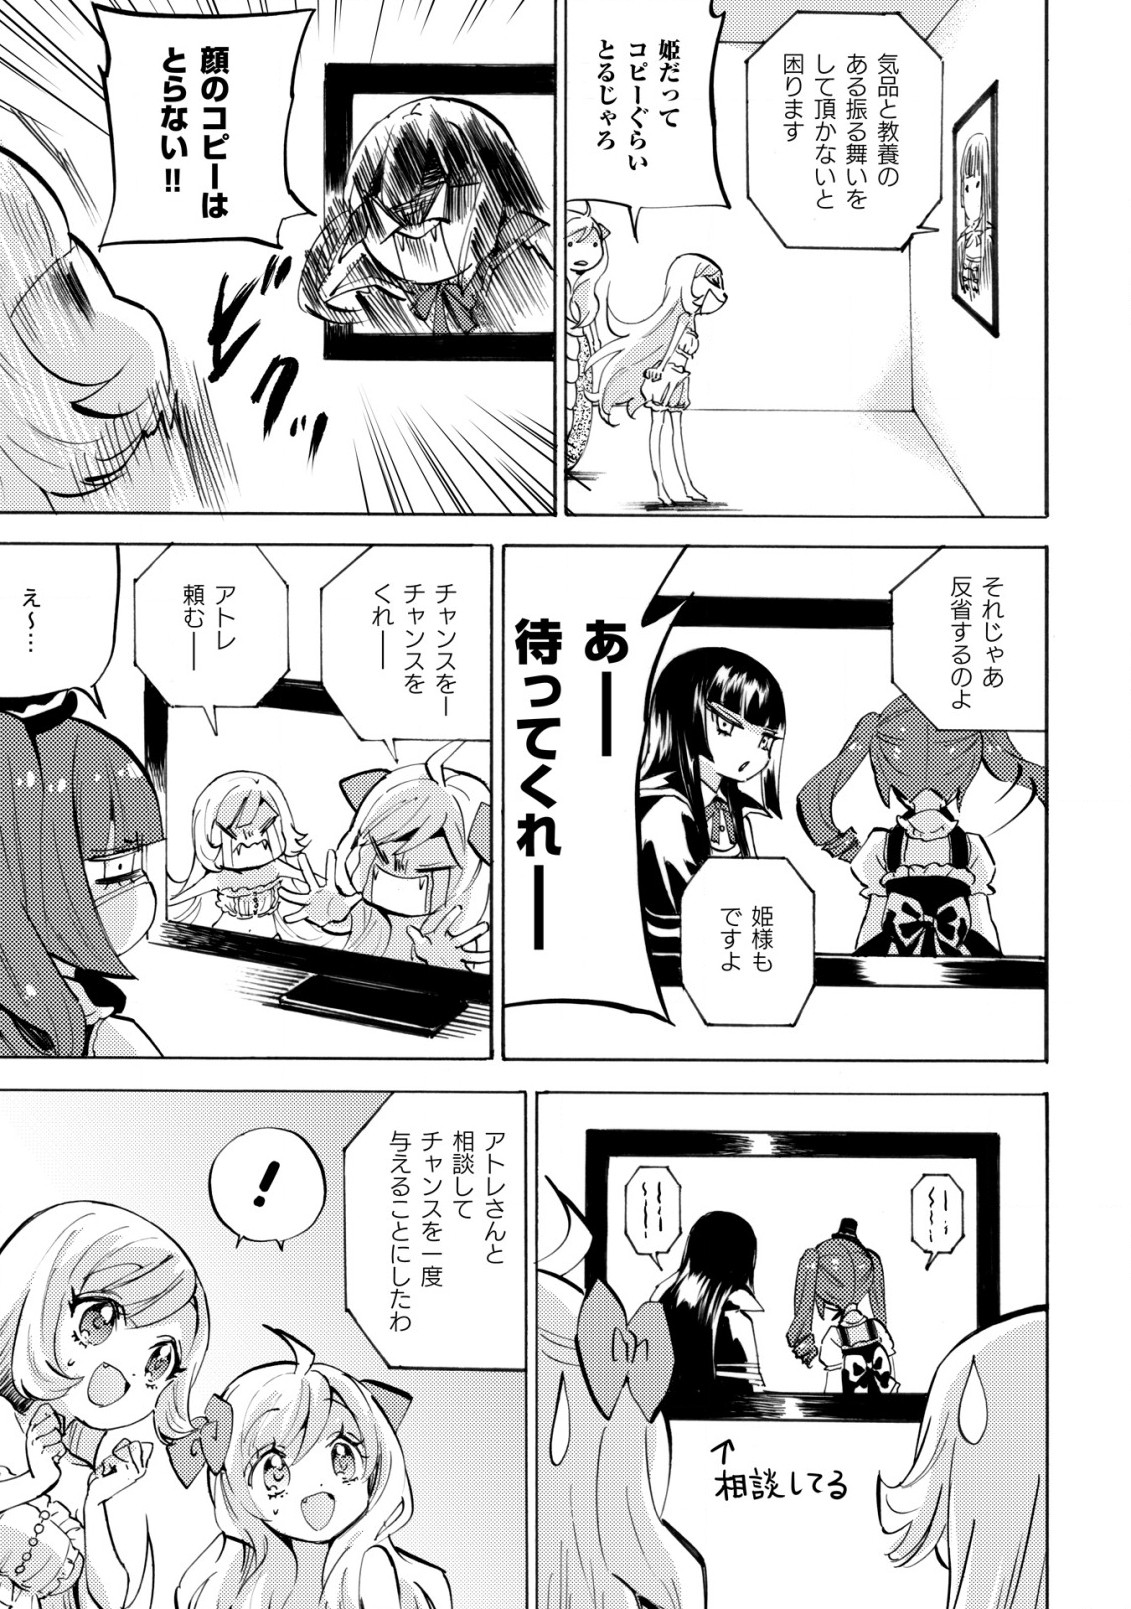 Jashin-chan Dropkick - Chapter 233 - Page 4